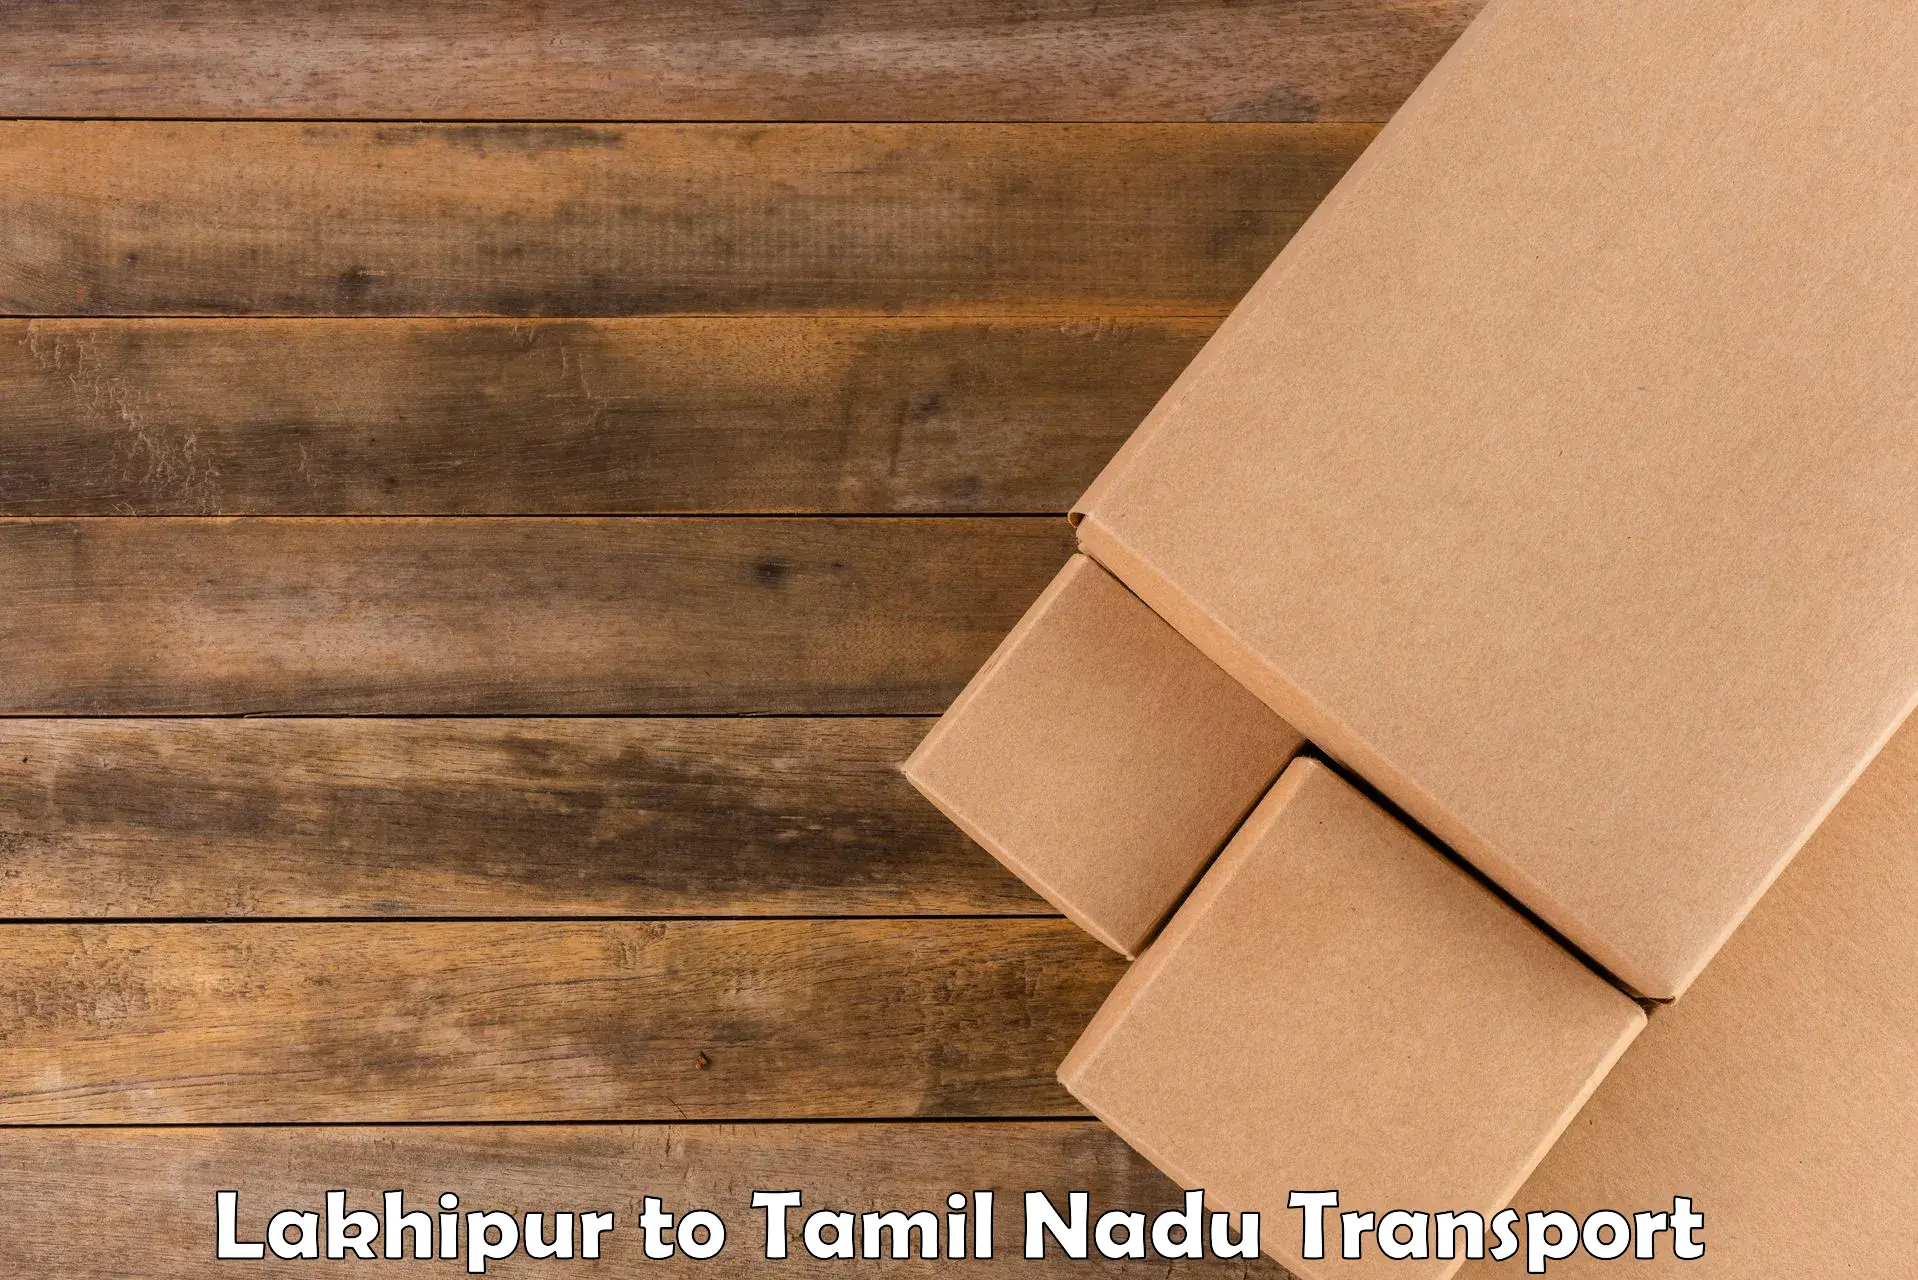 Goods delivery service Lakhipur to Tirupattur